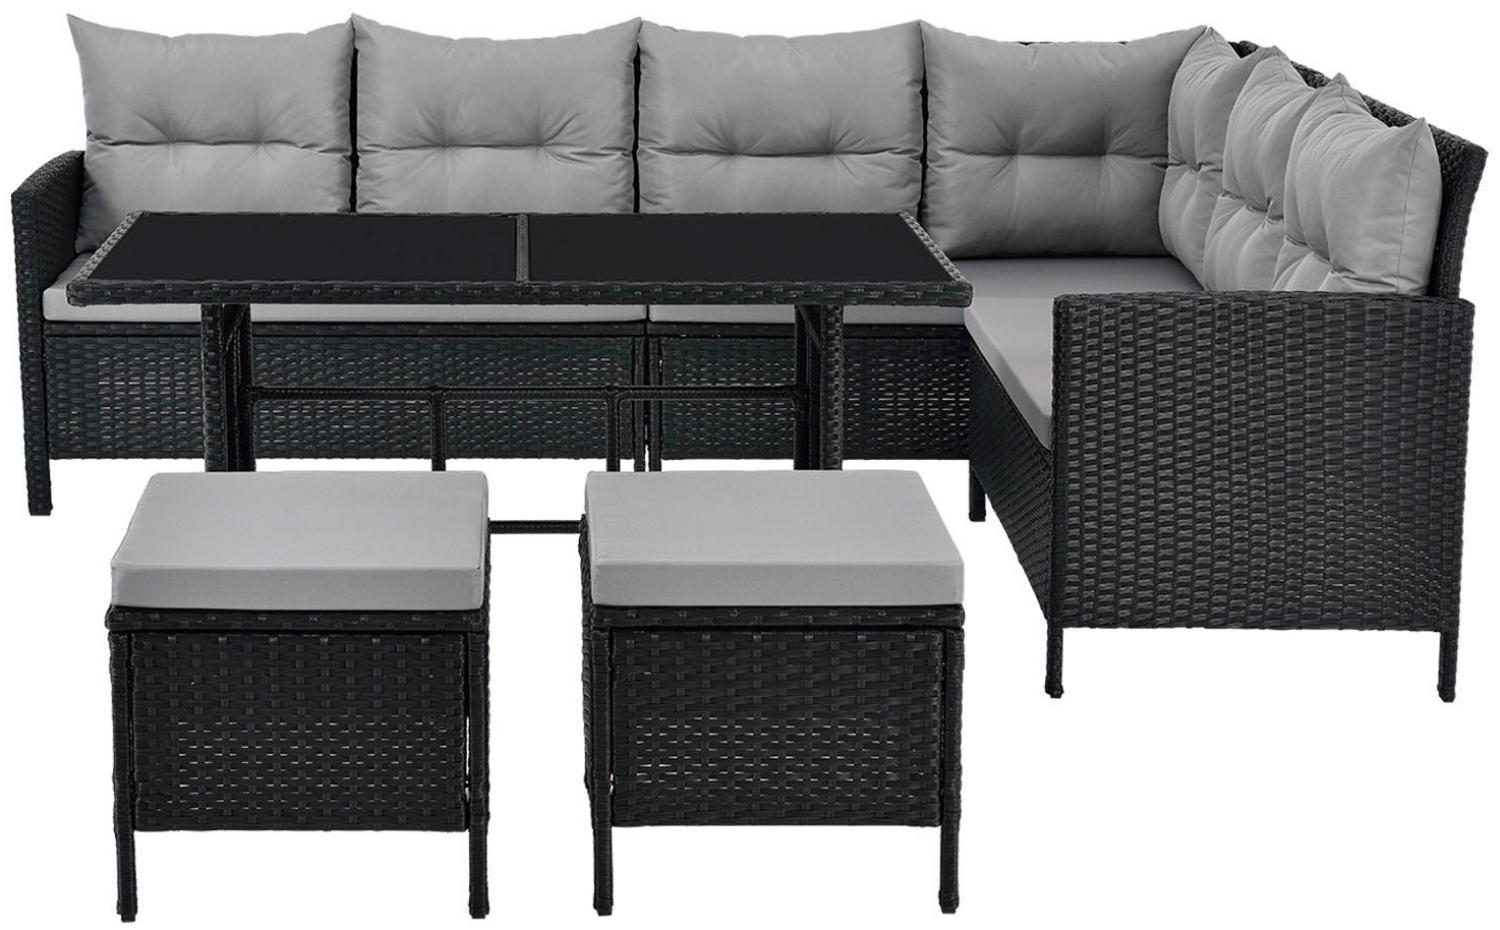 Juskys 'Manacor' Gartenlounge mit Sofa, Tisch, 2 Hocker & Kissen, bis 7 Personen, Polyrattan, schwarz/grau, 80 x 228 x 178 cm Bild 1